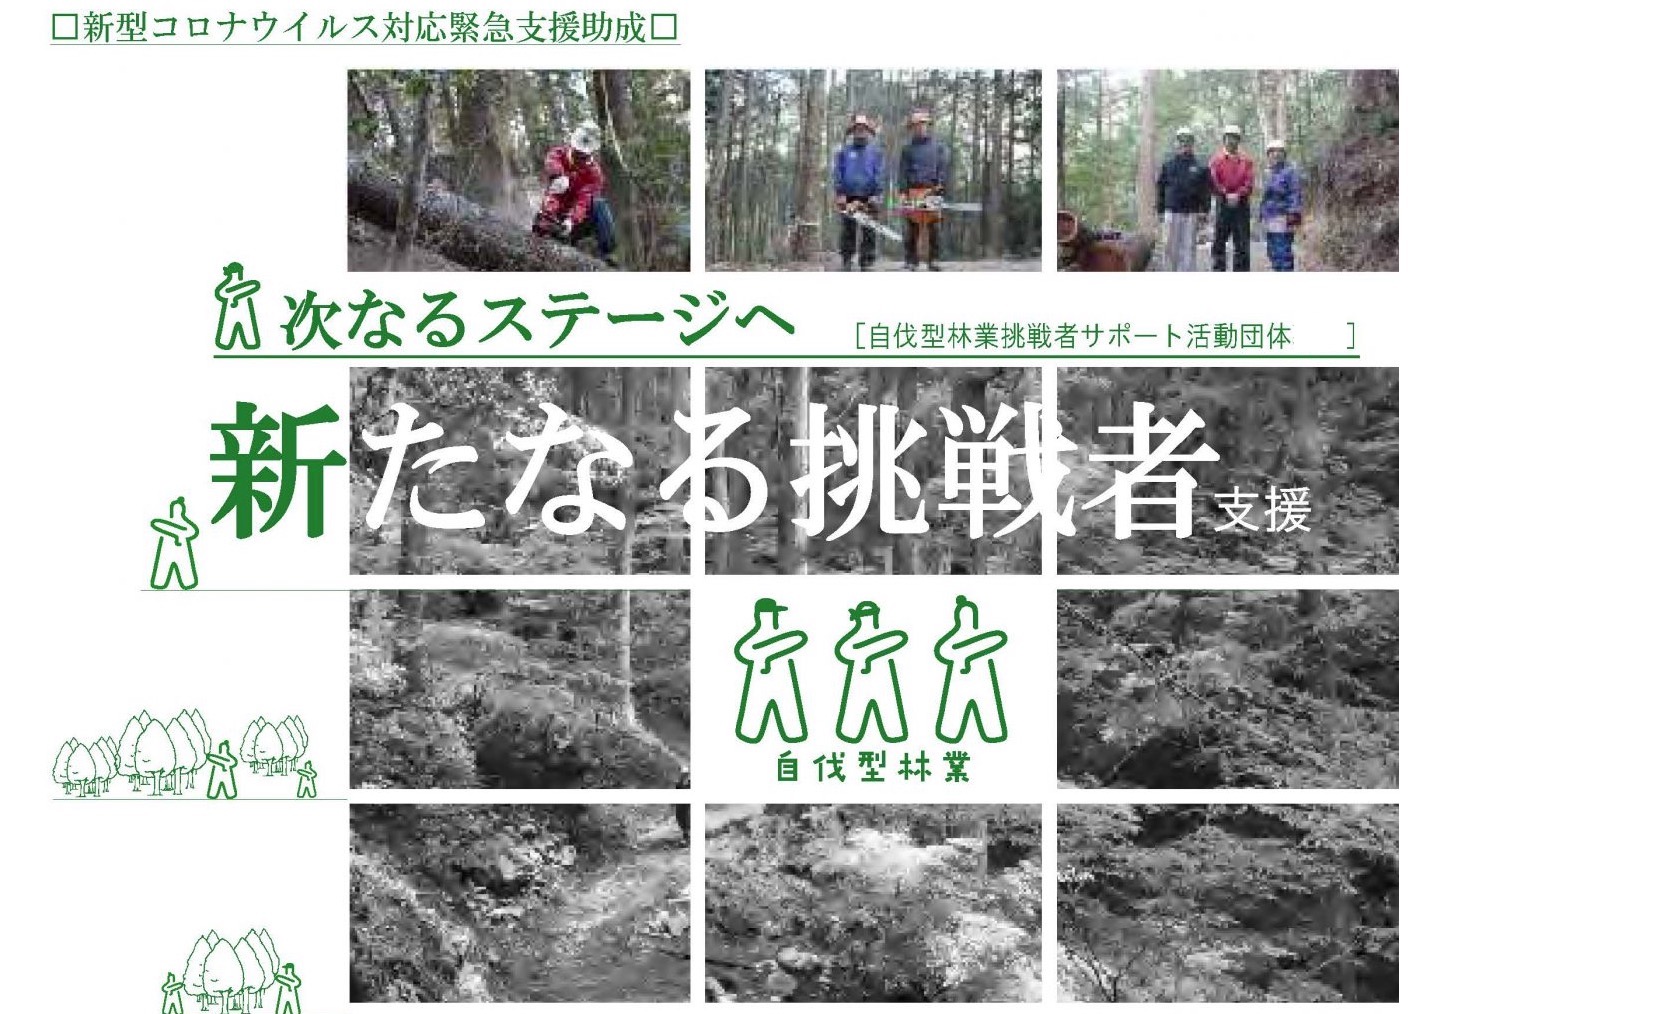 「失業者を救う自伐型林業参入支援助成」（休眠預金）成果報告会開催のお知らせ